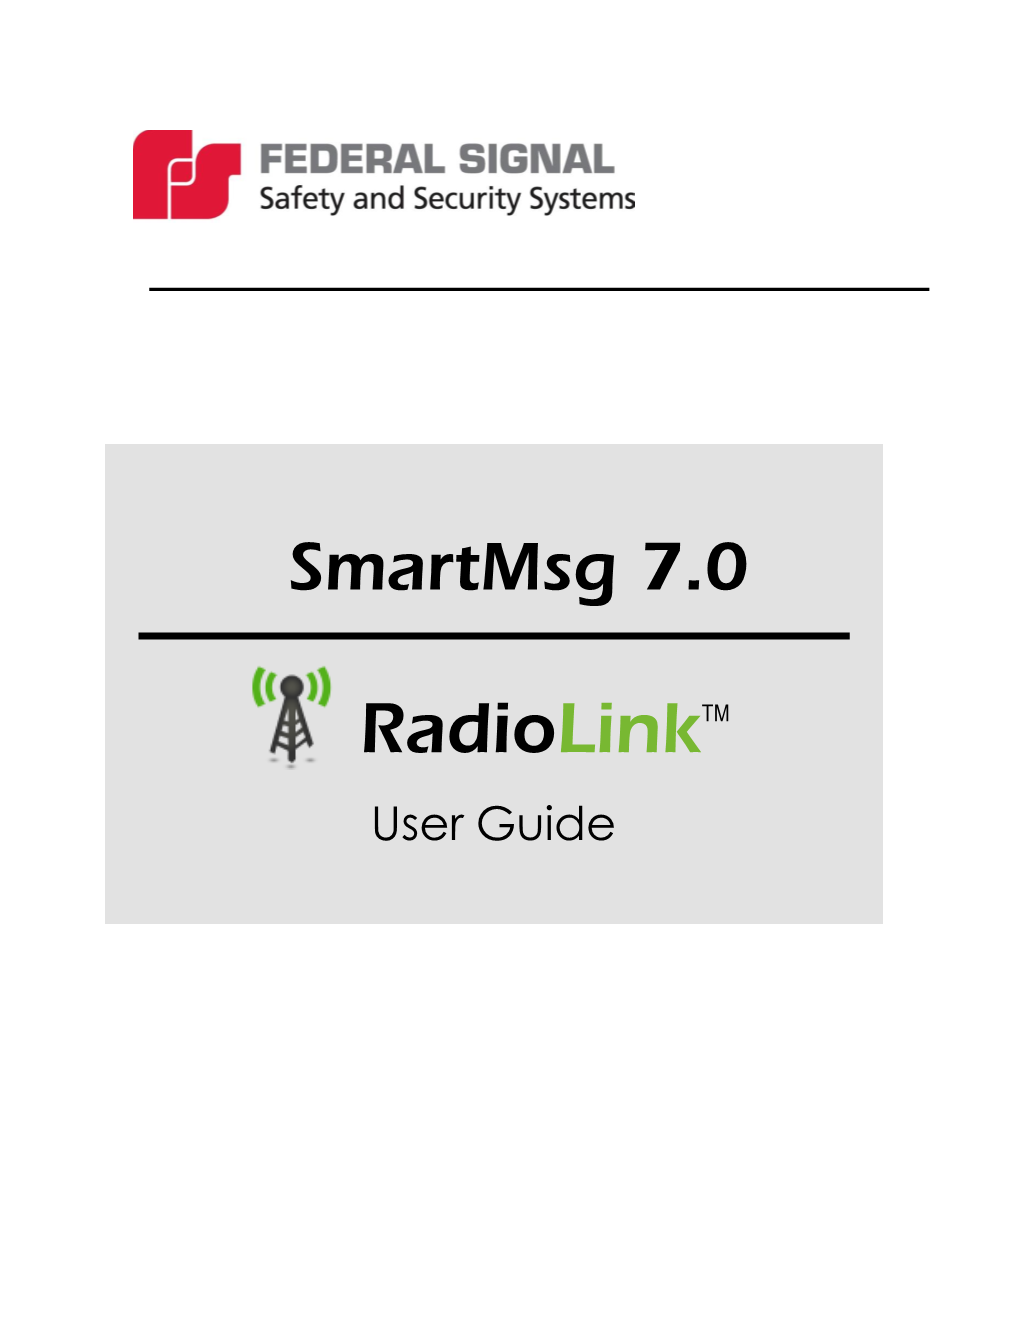 Radiolink User Guide – Version 3.0 – 2013